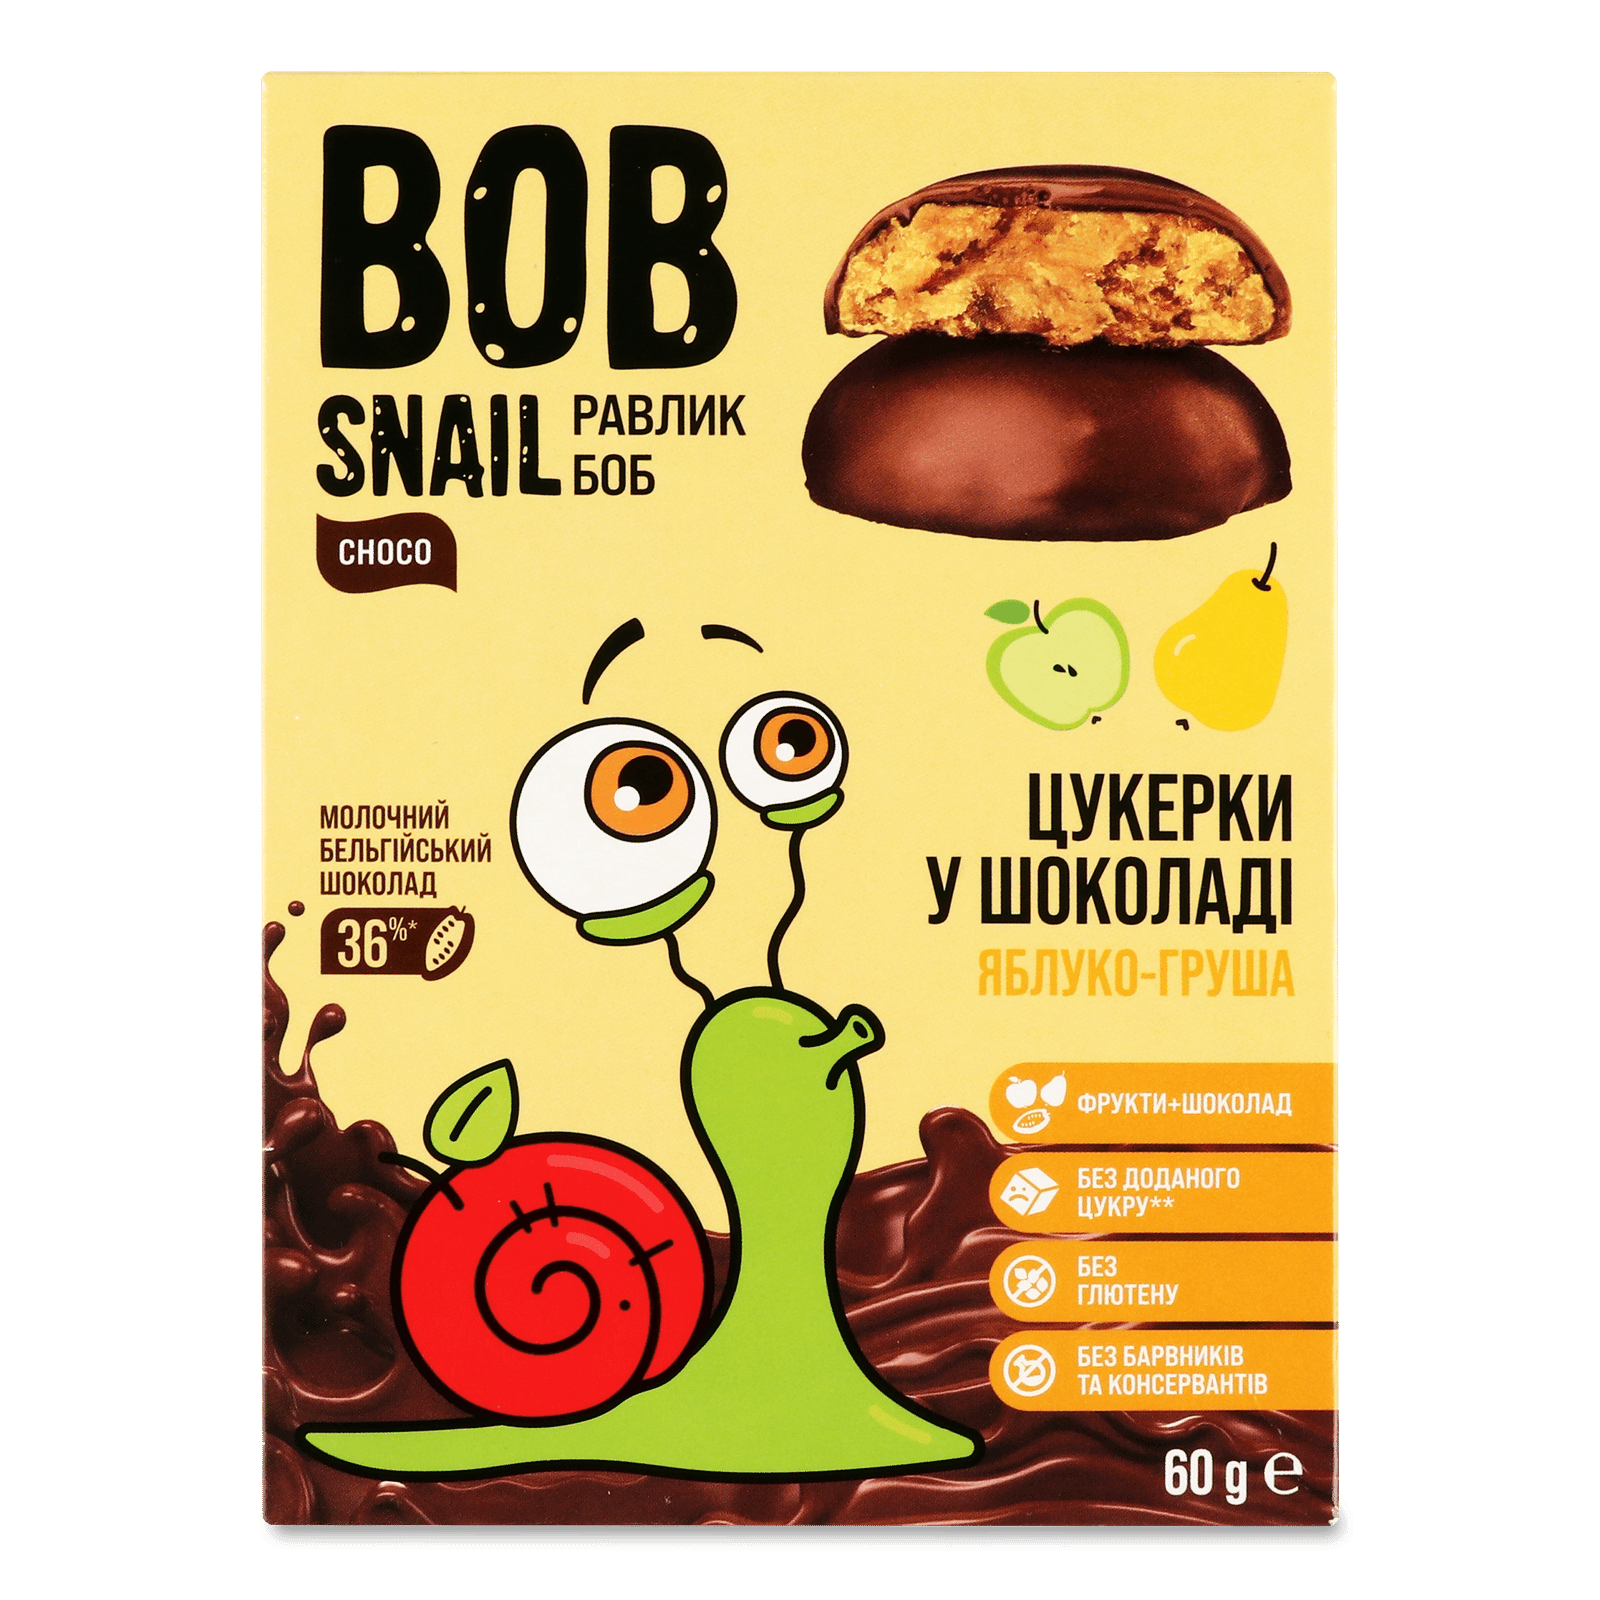 Цукерки Bob Snail яблучно-грушеві в бельгійському молочному шоколаді - 1